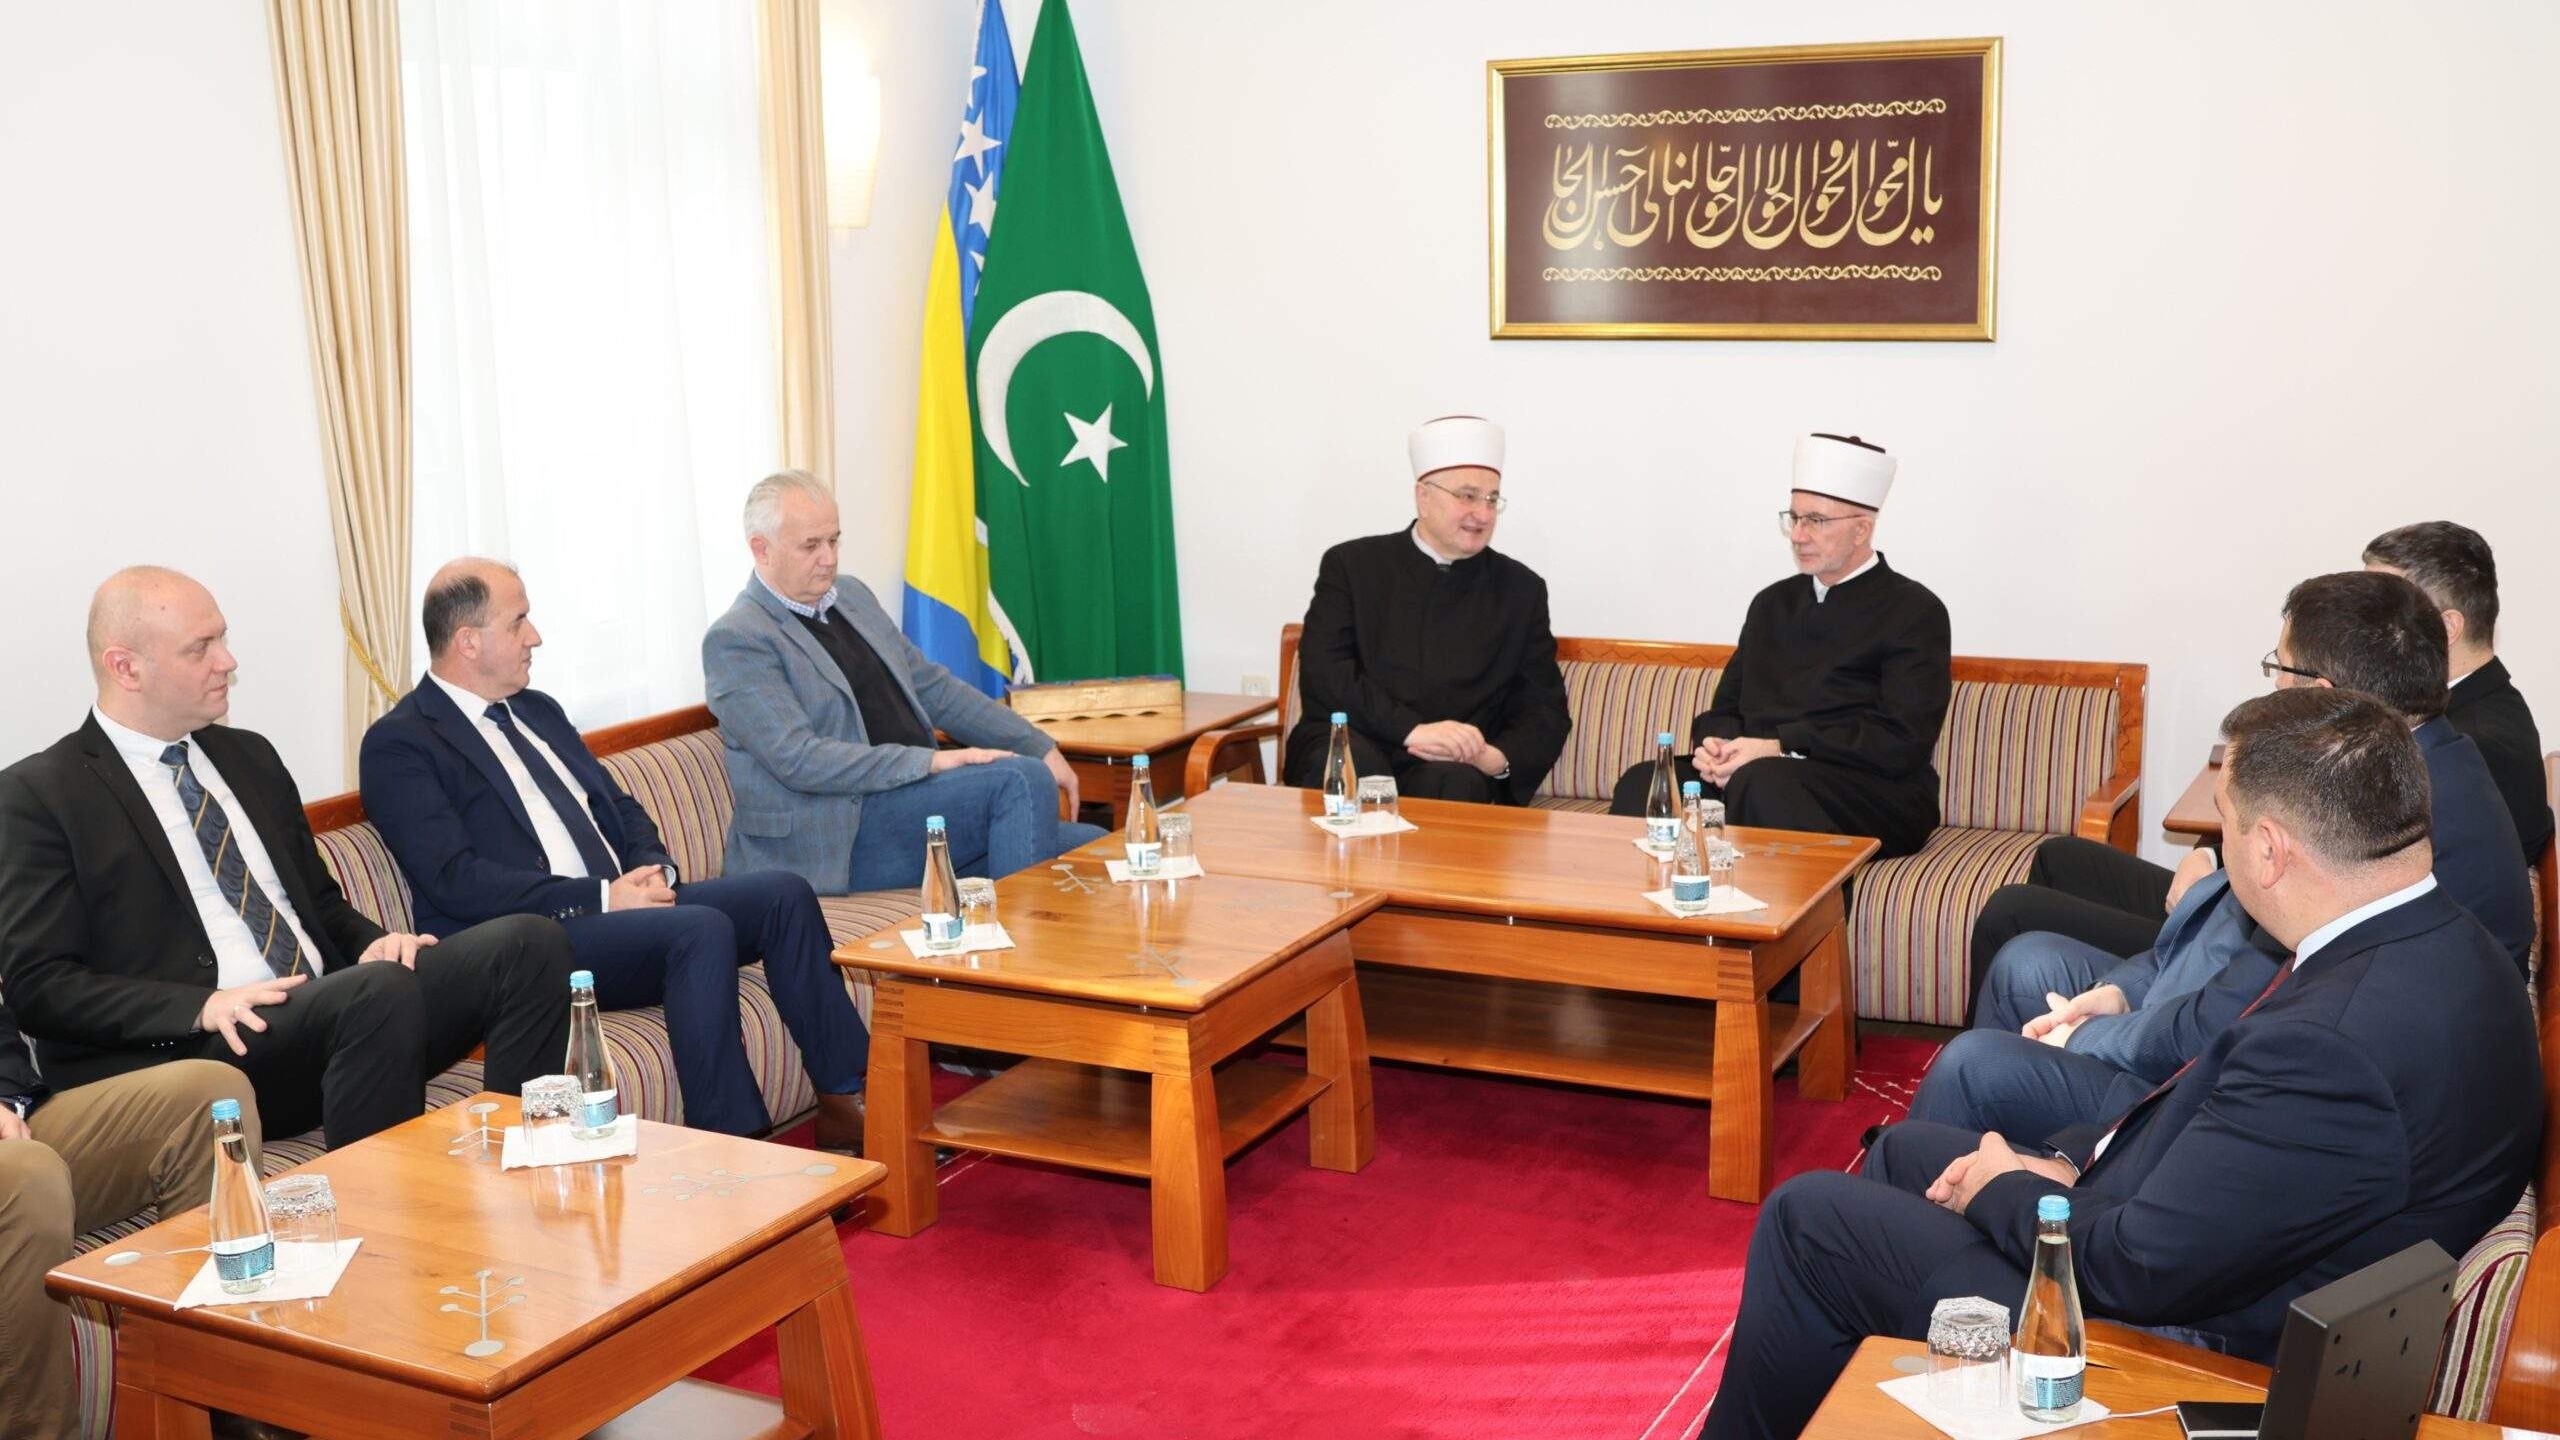 Muftijstvo tuzlansko posjetila delegacija Mešihata Islamske zajednice u Hrvatskoj